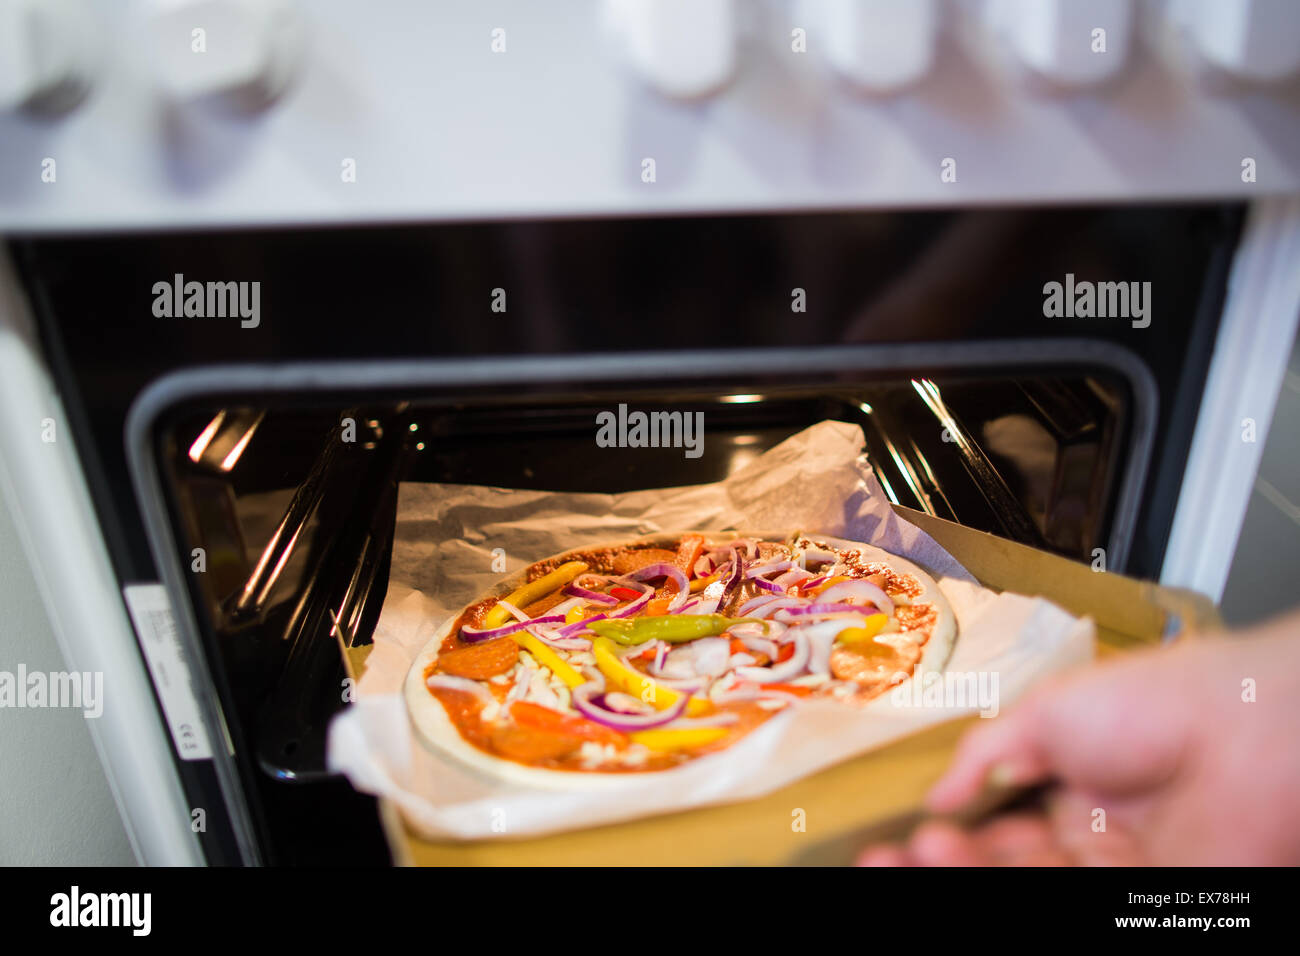 Bonn, Germania. 7 Luglio, 2015. Una pizza cruda viene messo in forno alla Vapiano sede a Bonn in Germania, 7 luglio 2015. Il ristorante della catena spera in futuro di offrire "Homebaked Pizza" - pizza che il cliente cuoce in forno stessi. Foto: Rolf Vennenbernd/dpa/Alamy Live News Foto Stock